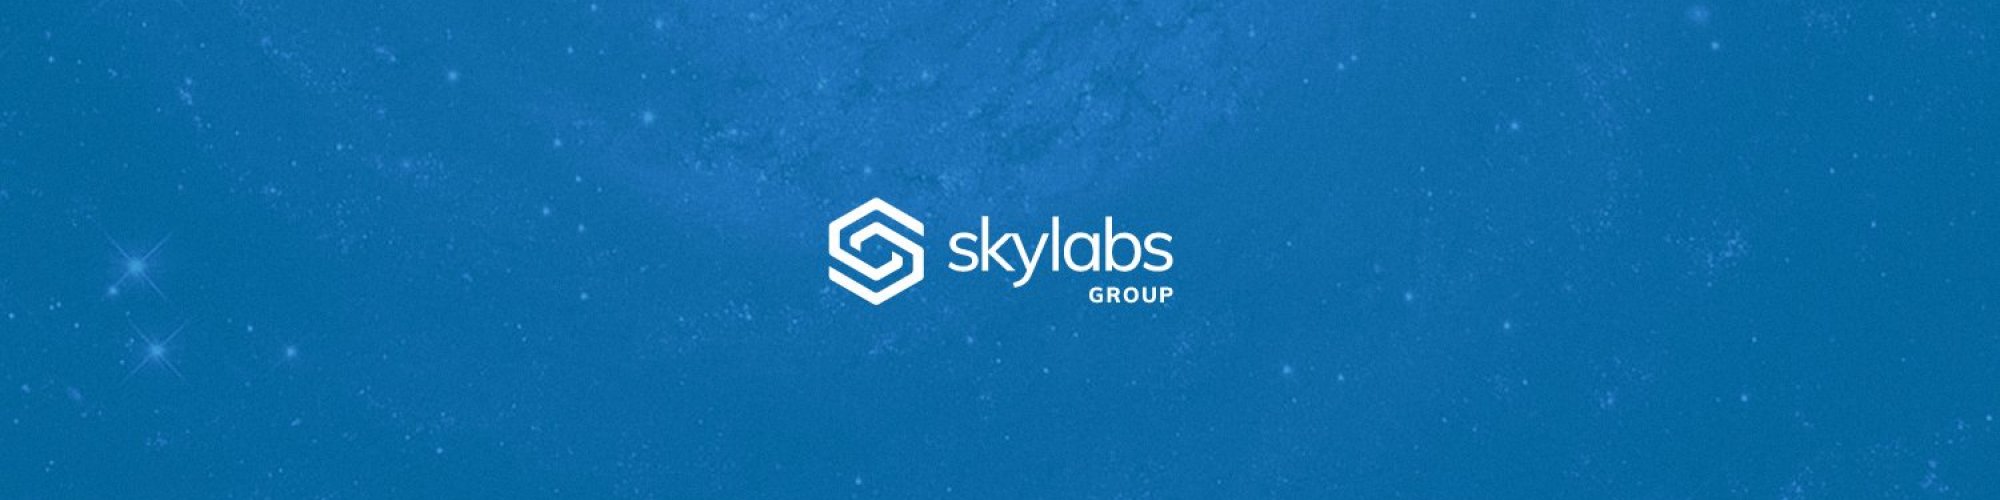 Skylabs Group